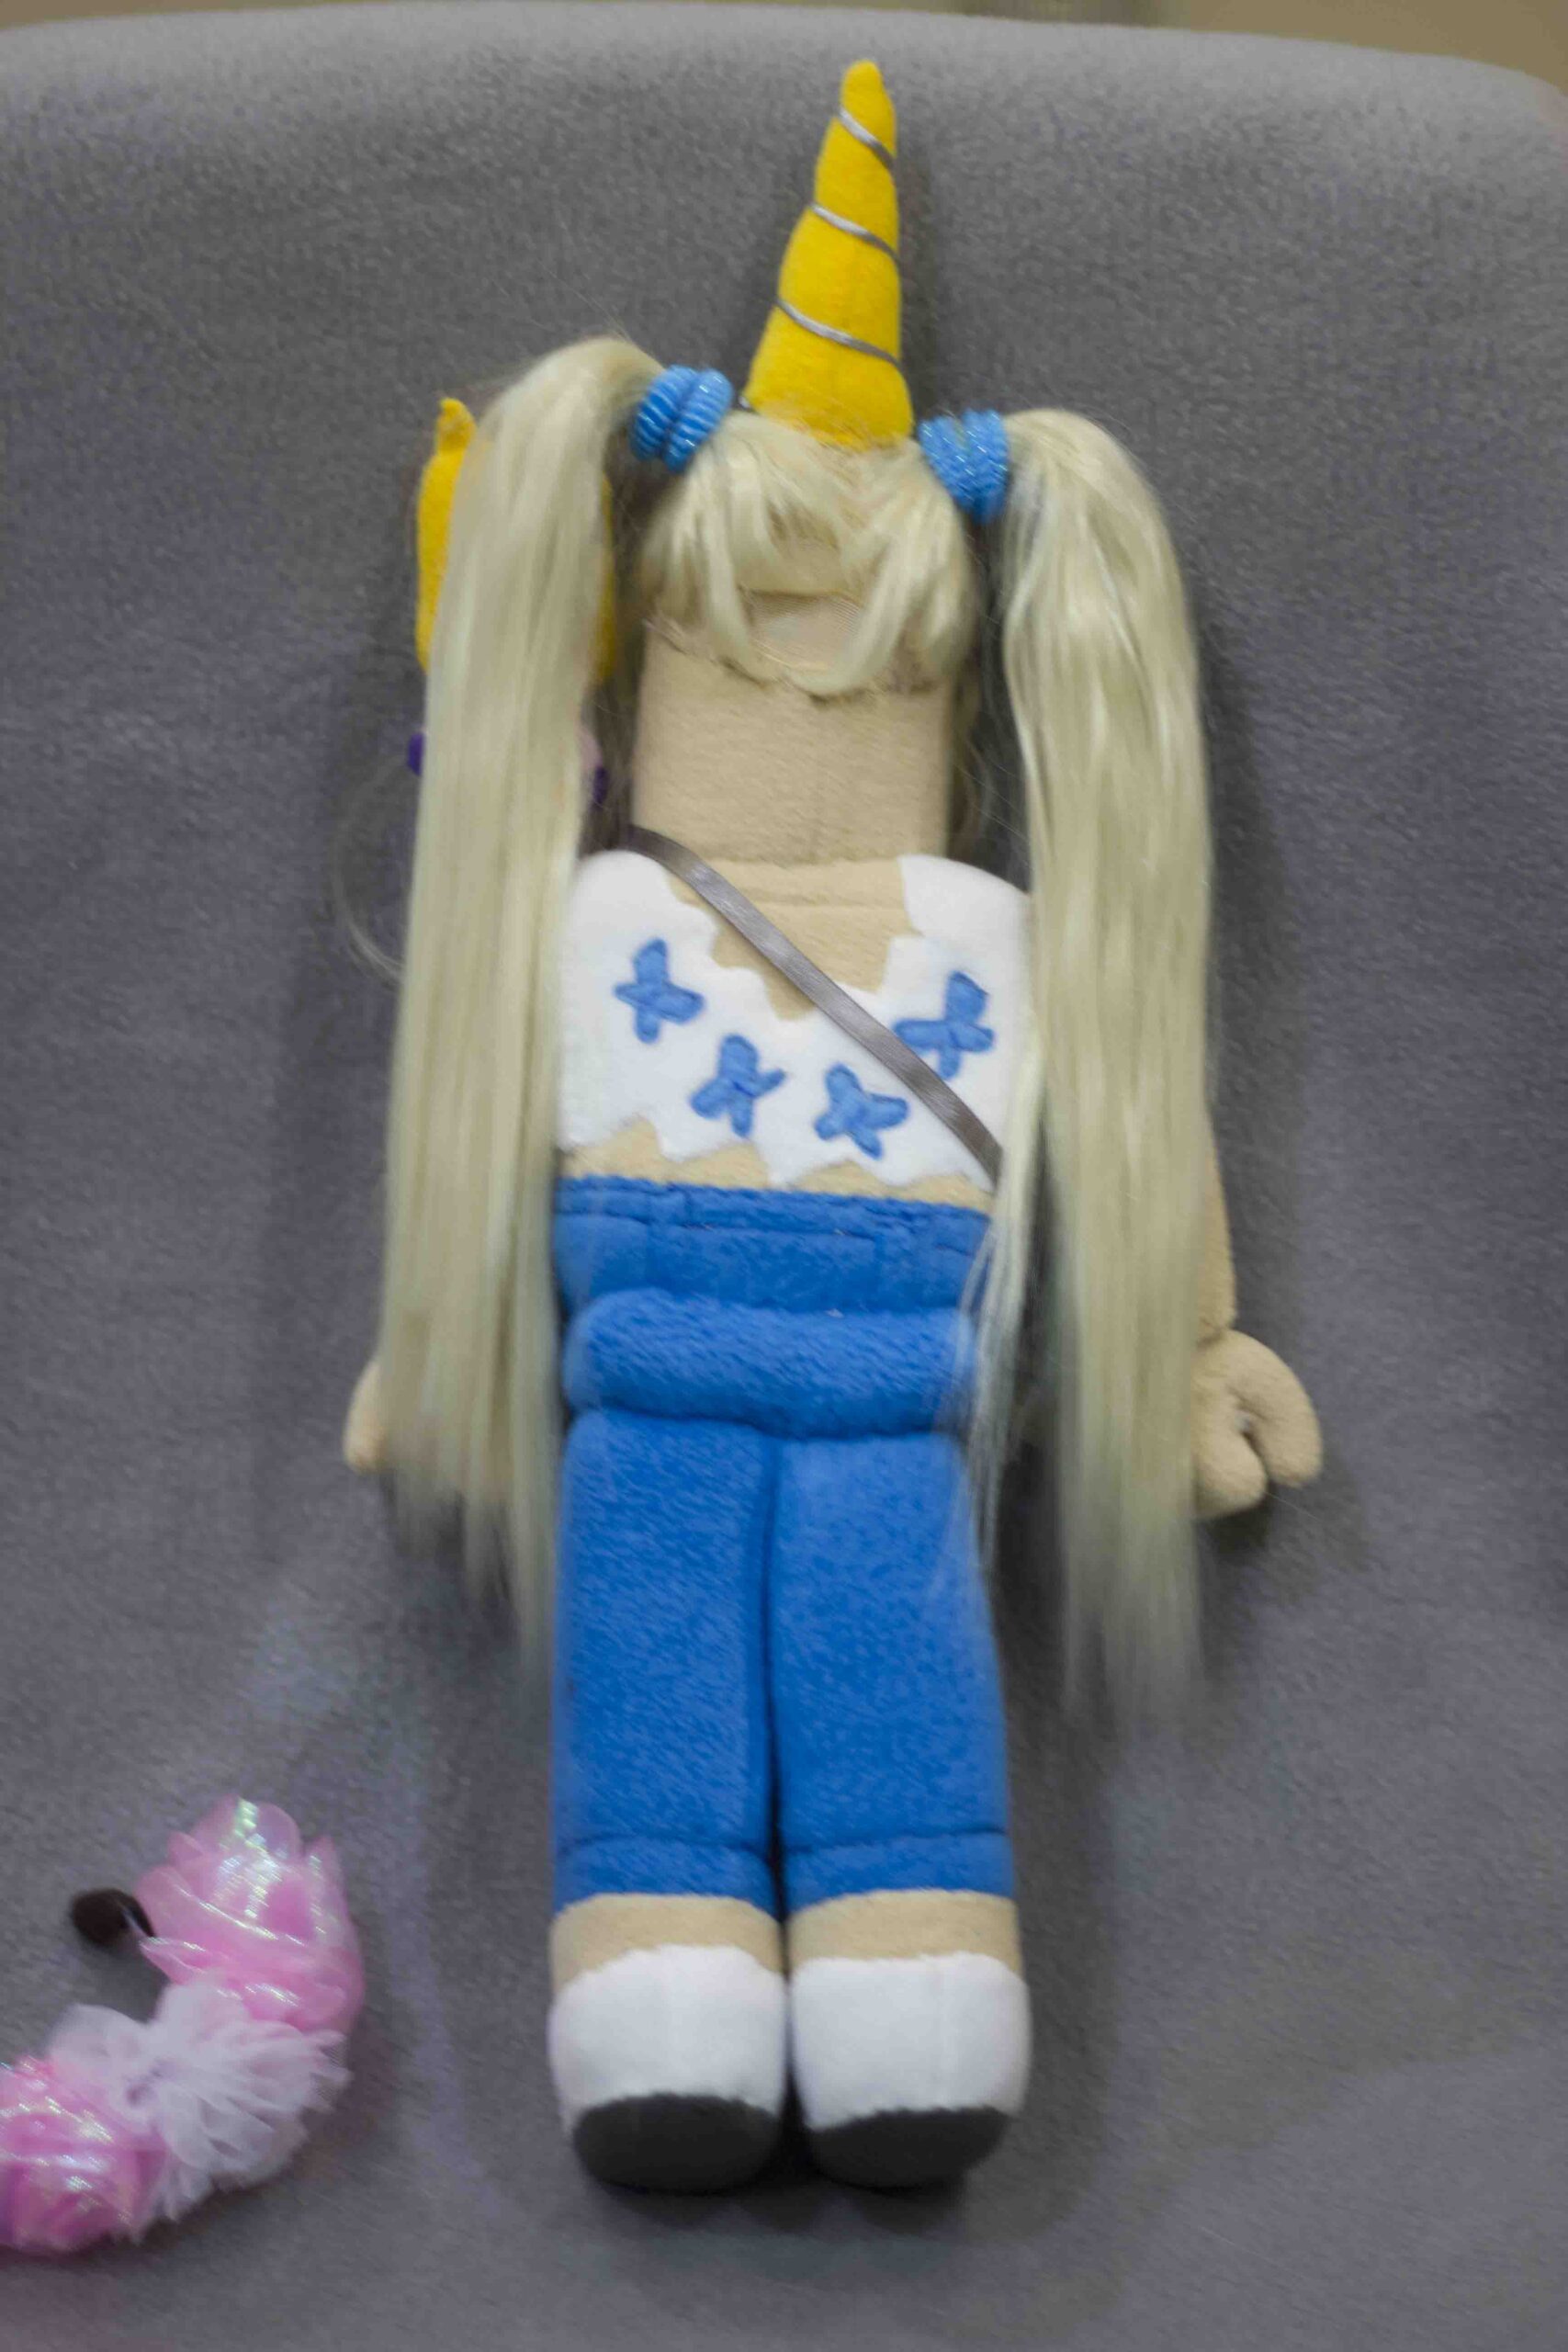 Roblox Avatar plush toy - DailyDoll Shop